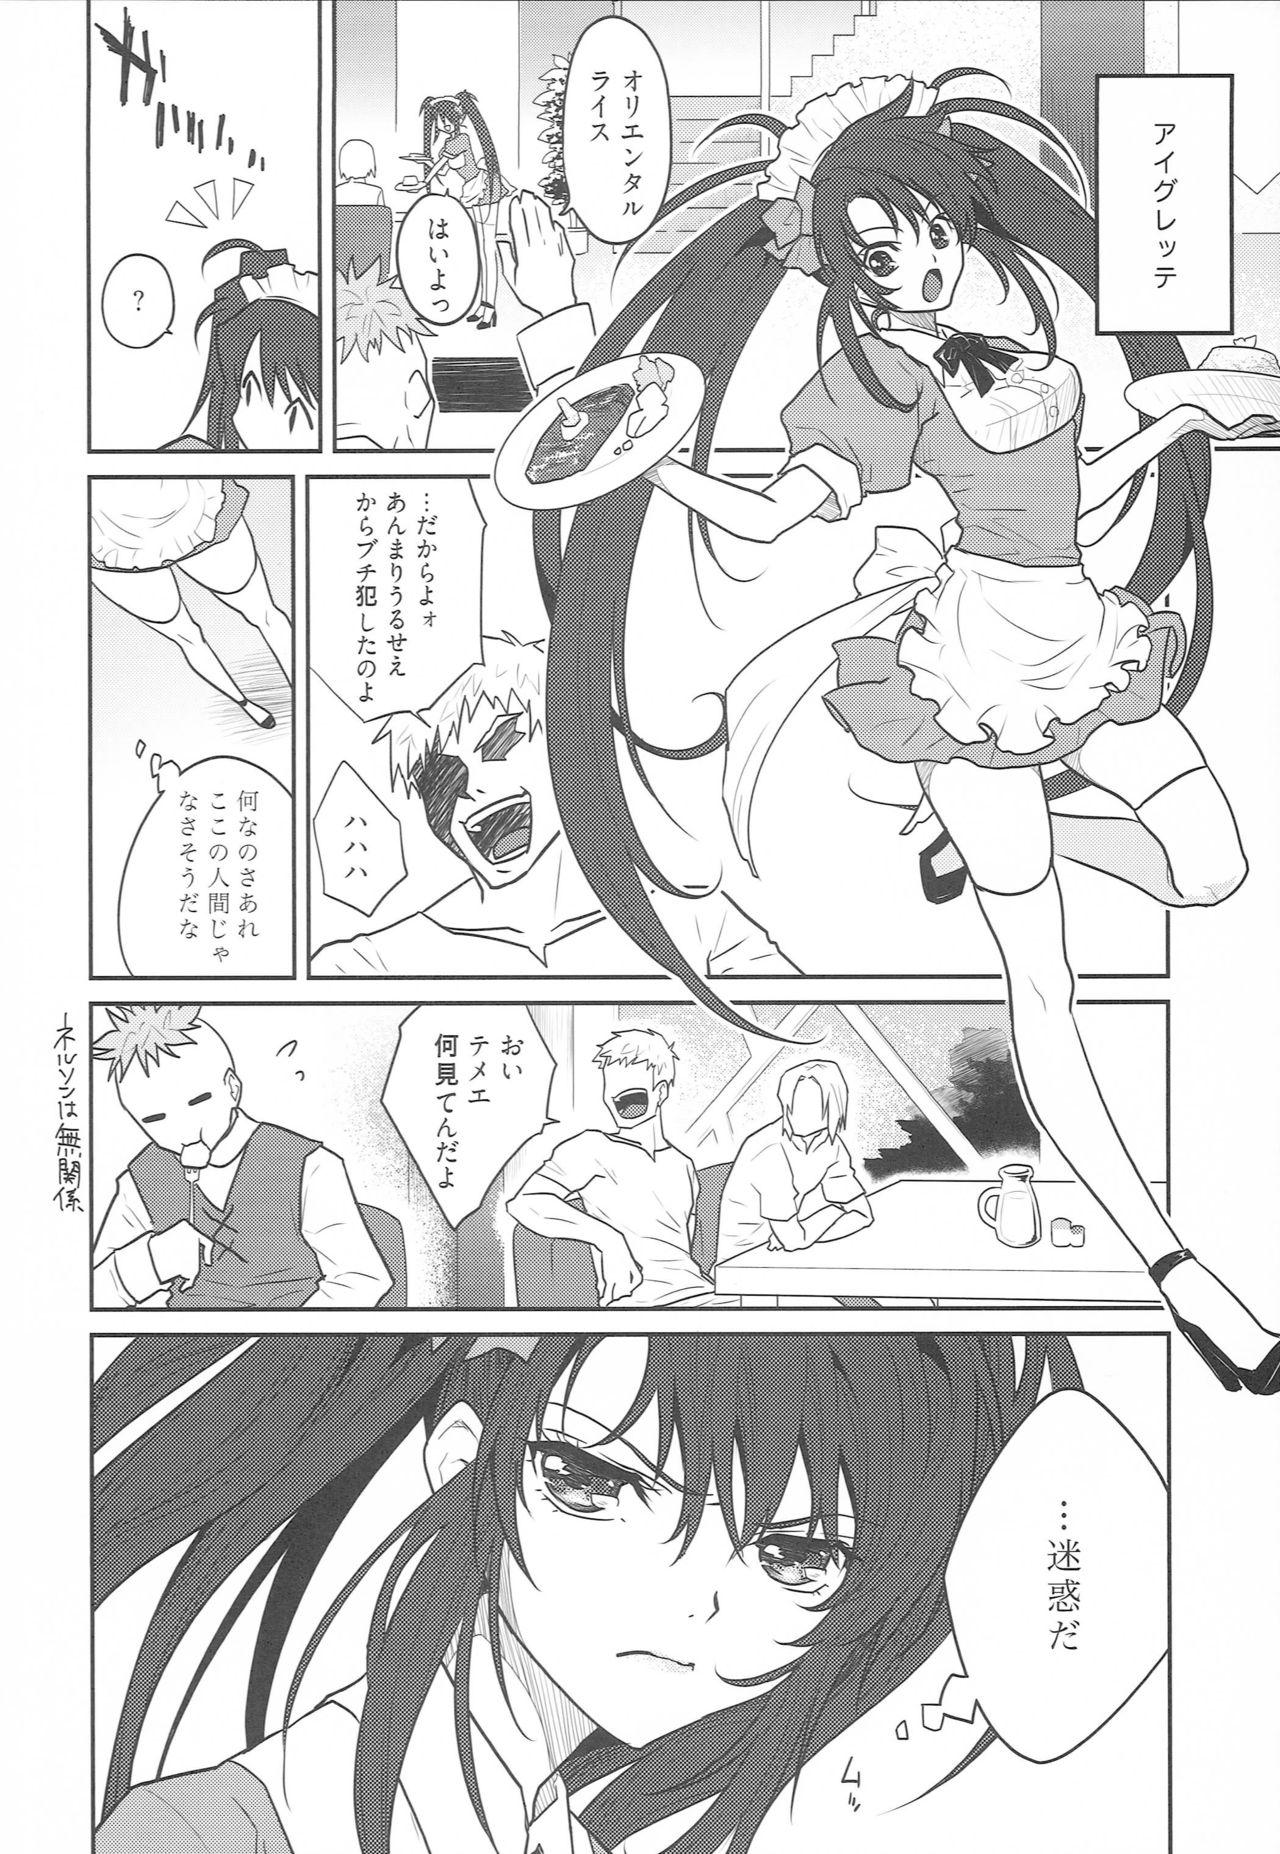 Footfetish 7 Rin - Tales of destiny 2 Amigo - Page 3